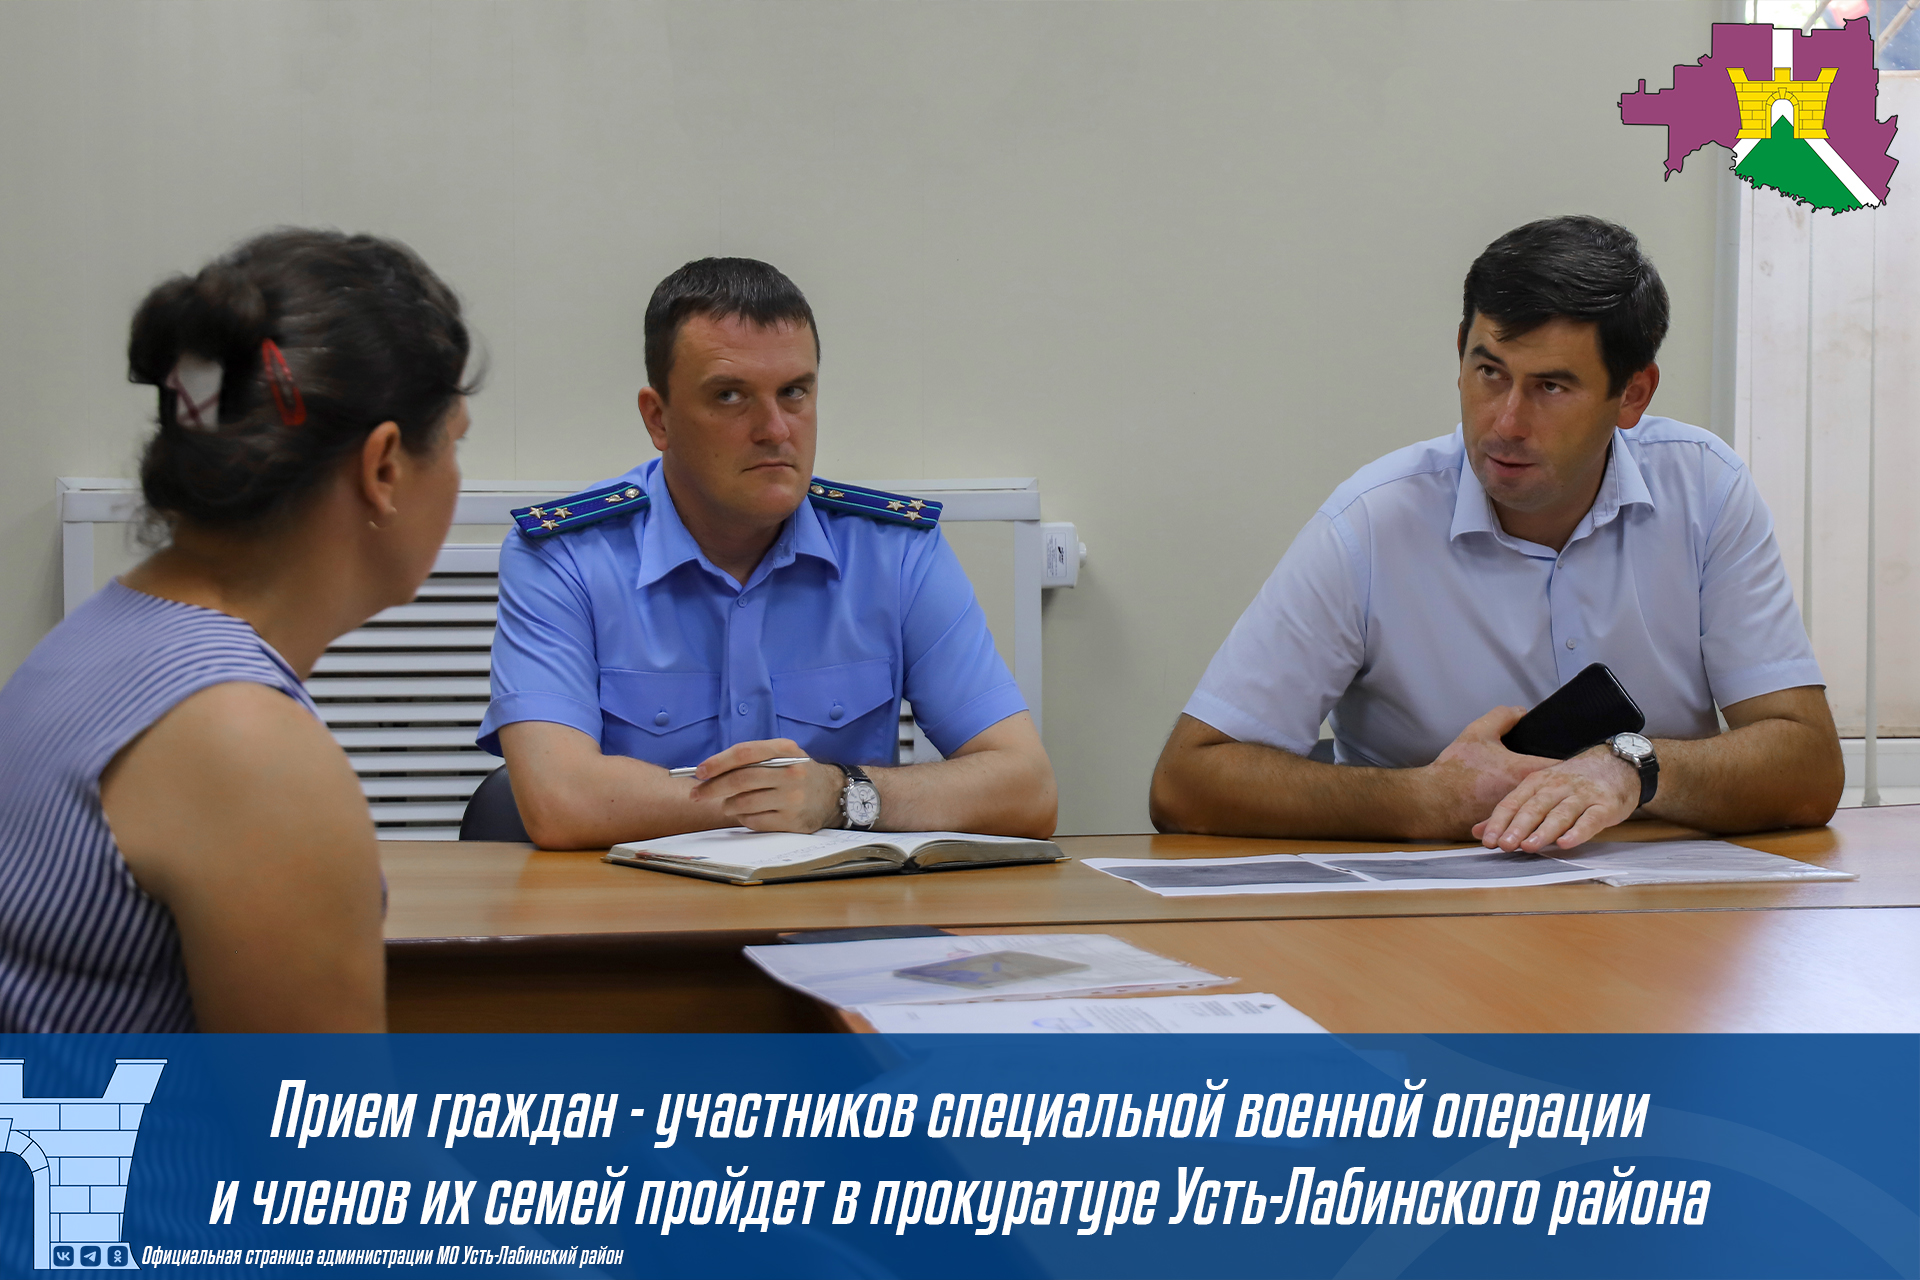 Прием граждан - участников специальной военной операции и членов их семей пройдет в прокуратуре Усть-Лабинского района